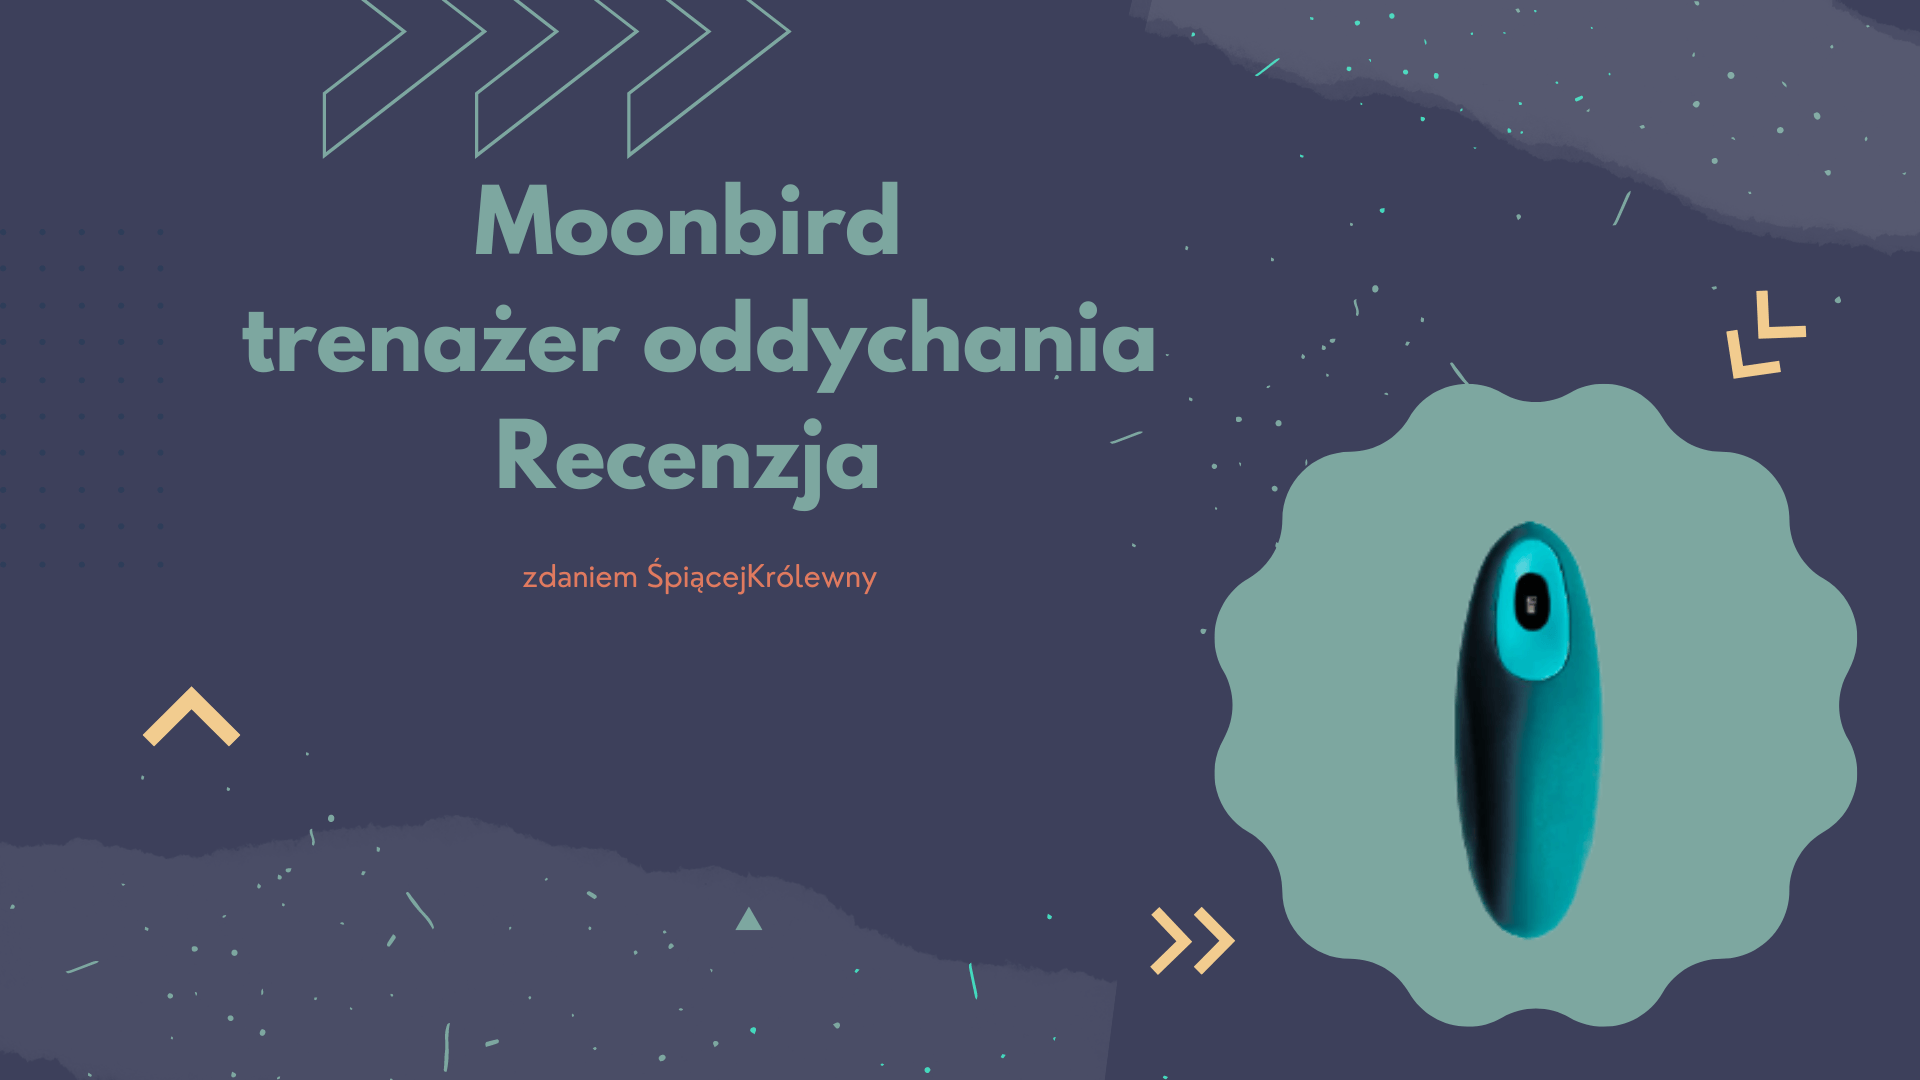 Moonbird – trenażer oddychania i zasypiania. Recenzja